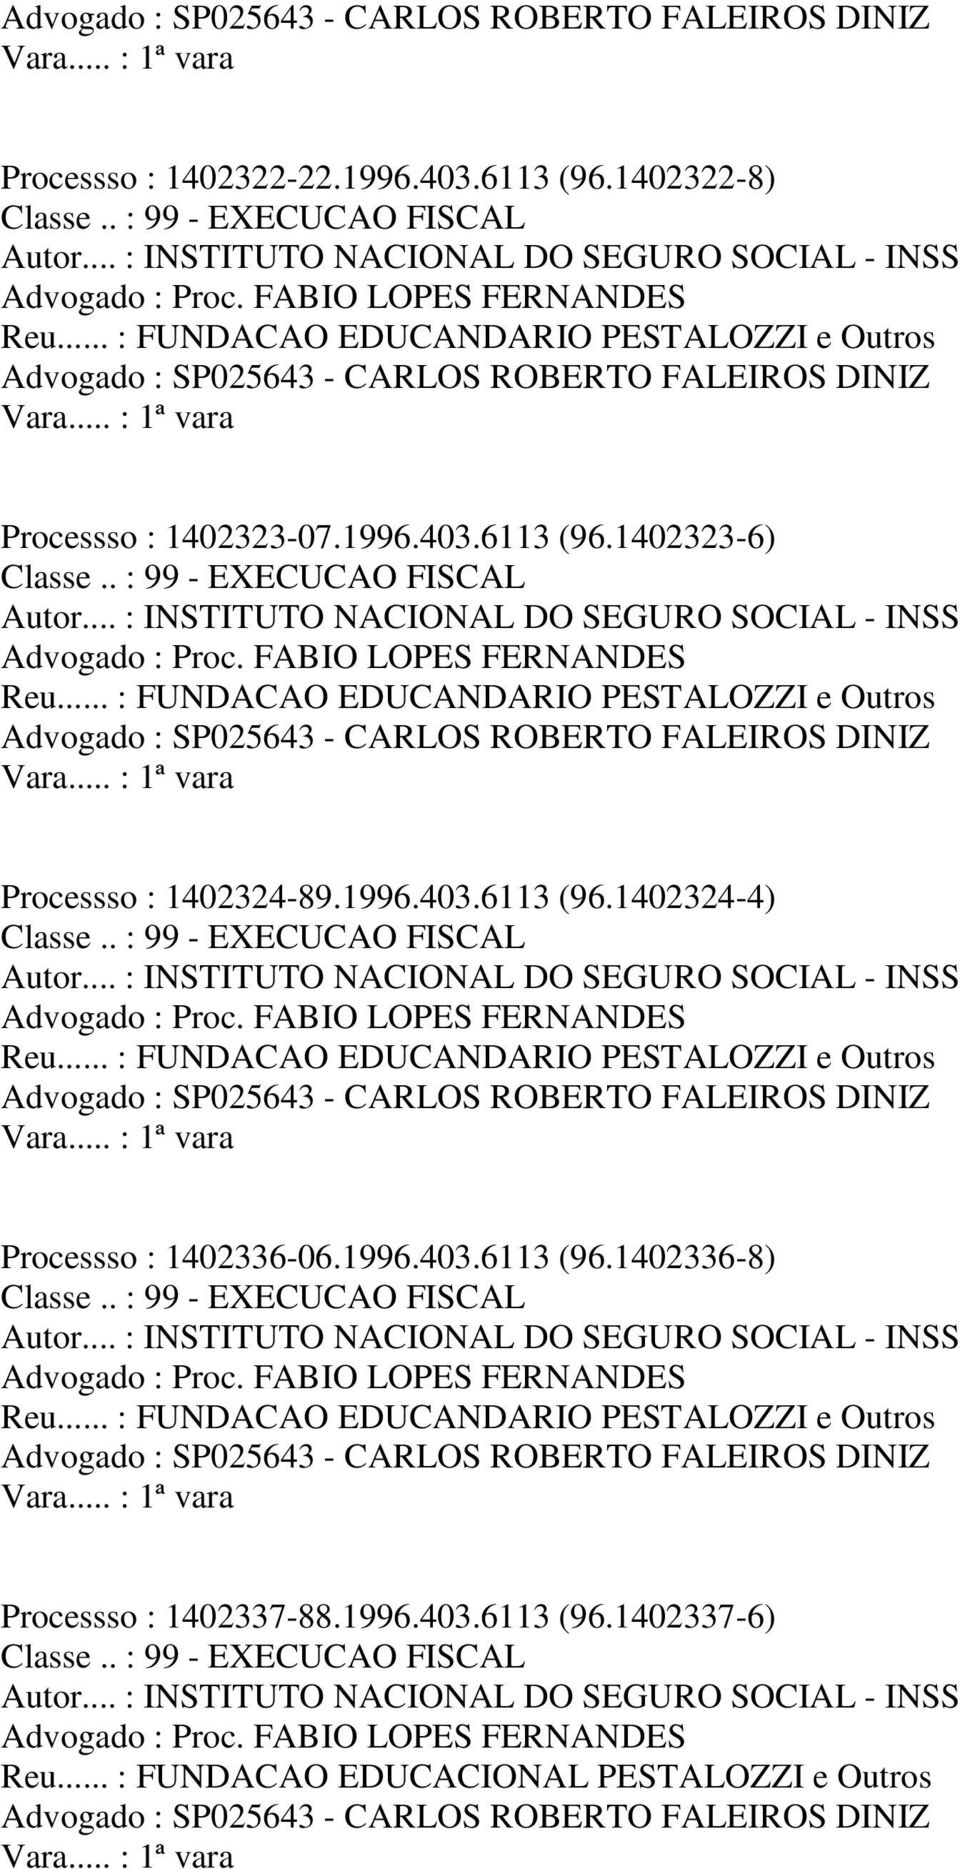 .. : FUNDACAO EDUCANDARIO PESTALOZZI e Outros Processso : 1402336-06.1996.403.6113 (96.1402336-8) Advogado : Proc. FABIO LOPES FERNANDES Reu.